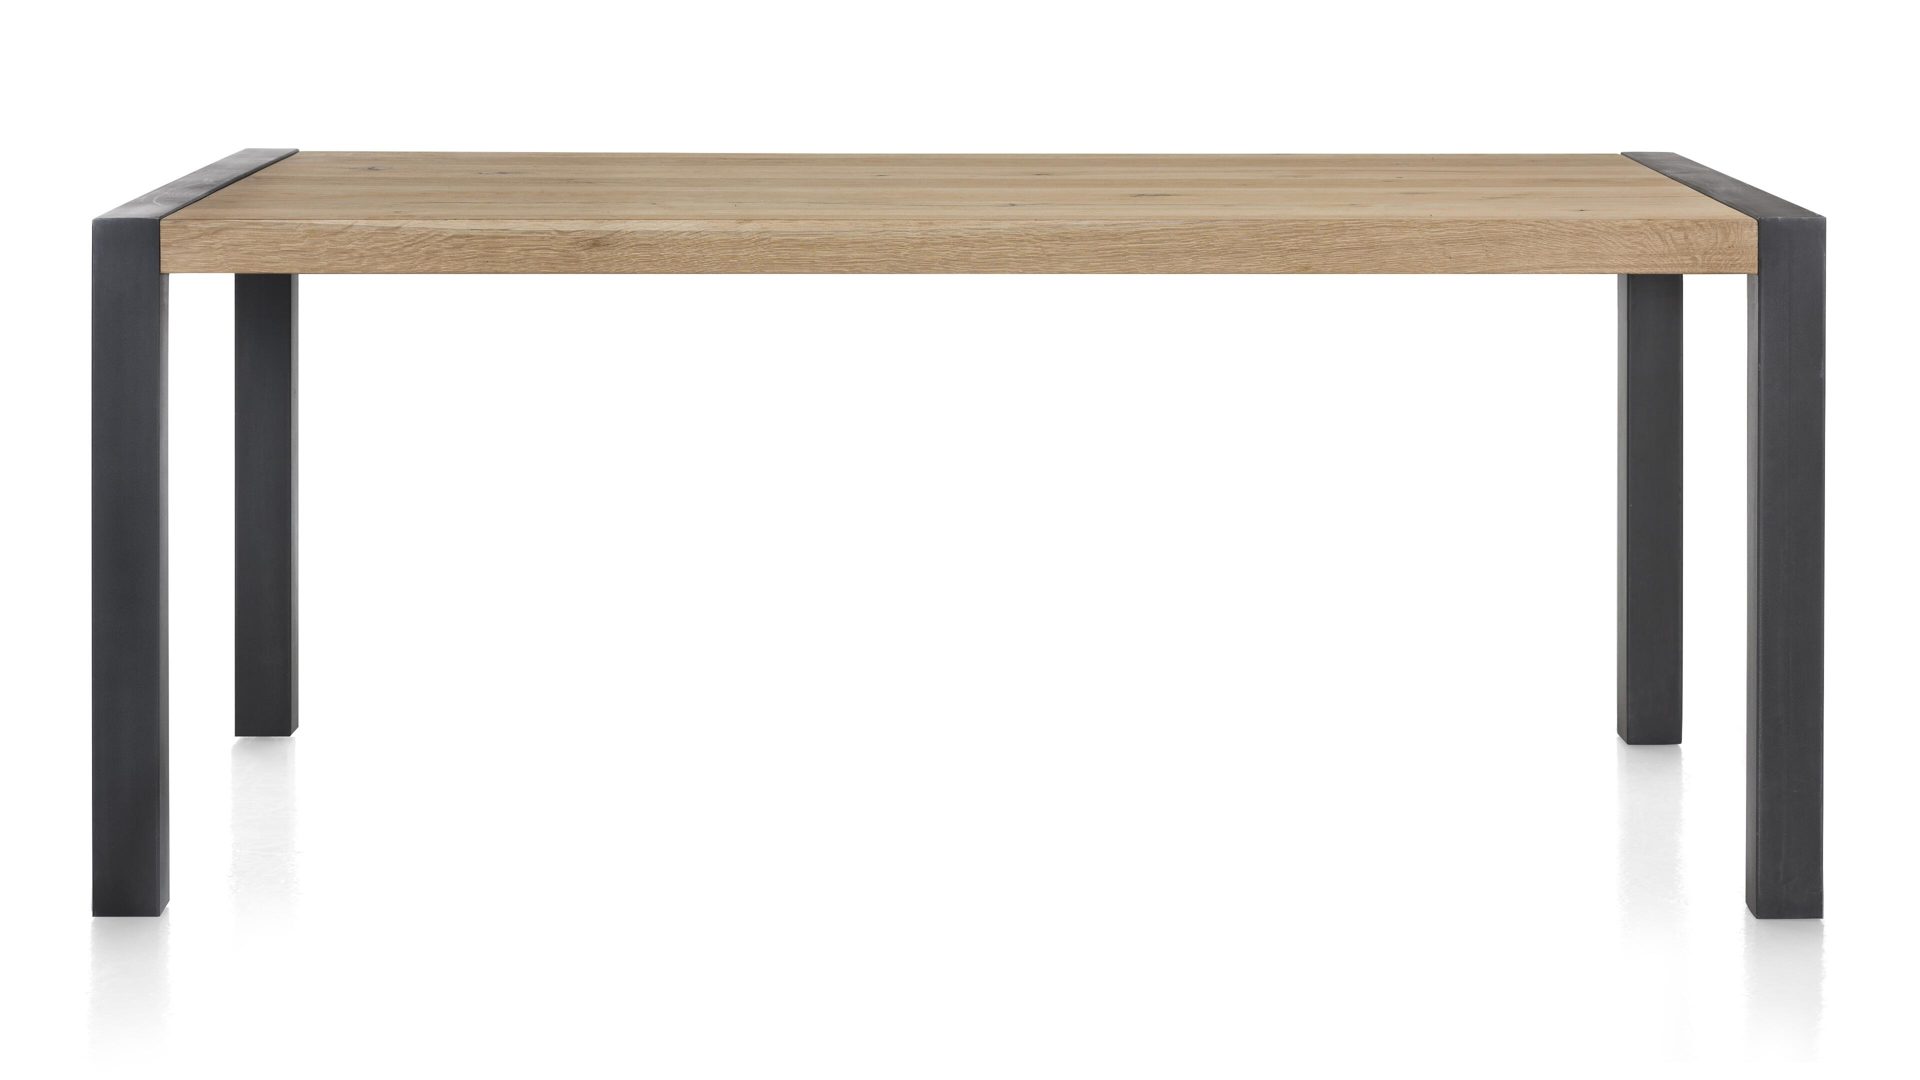 Esstisch Habufa aus Holz in Holzfarben HABUFA Esstisch bzw. Esszimmermöbel Brooklyn Railway braunes Eichefurnier – ca. 160 x 100 cm